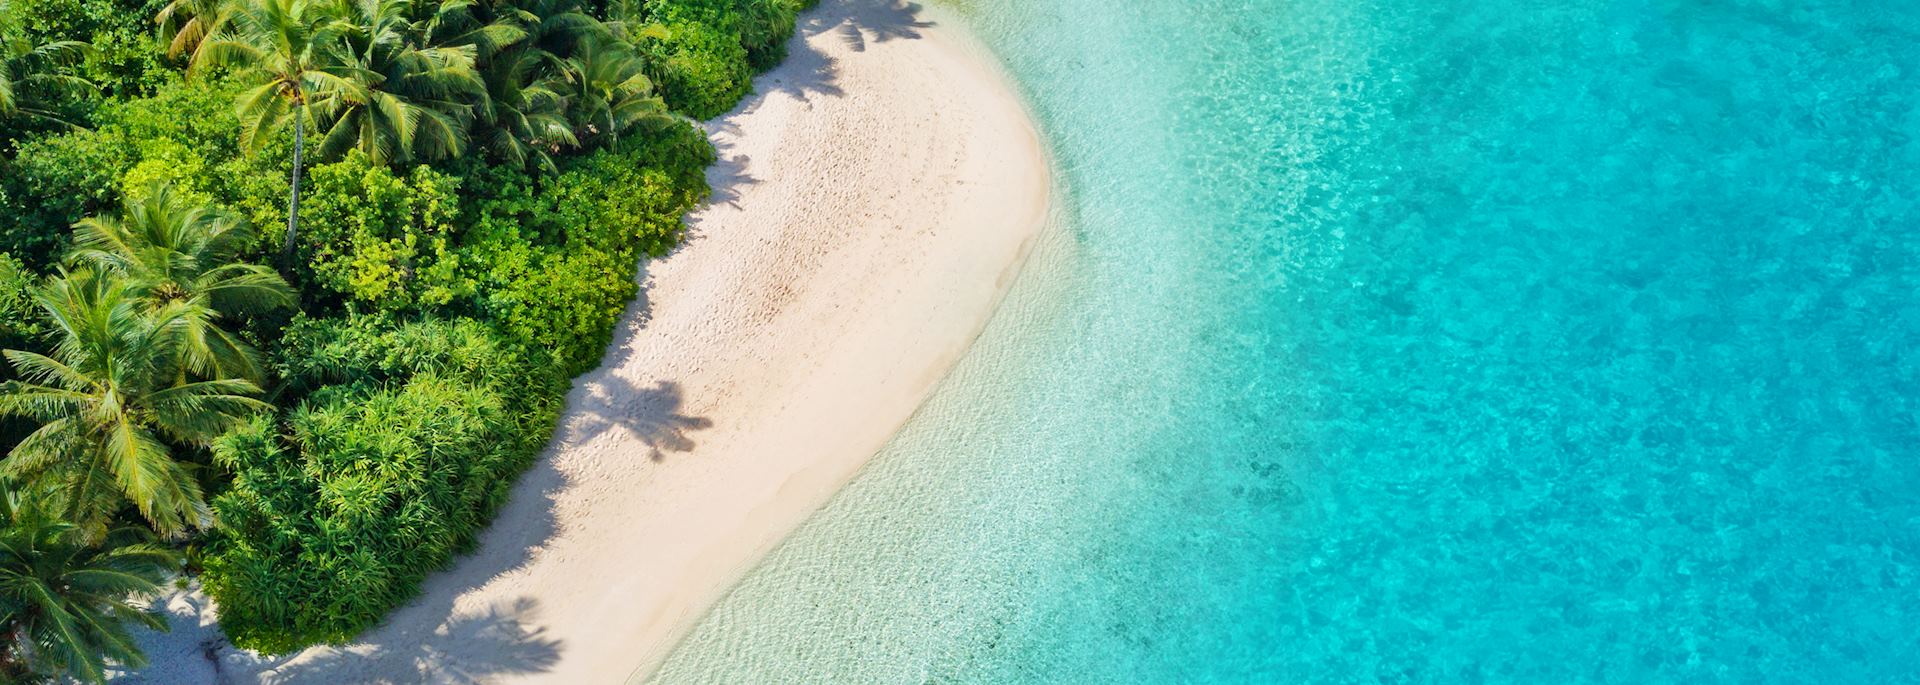 Maldives beach aerial view